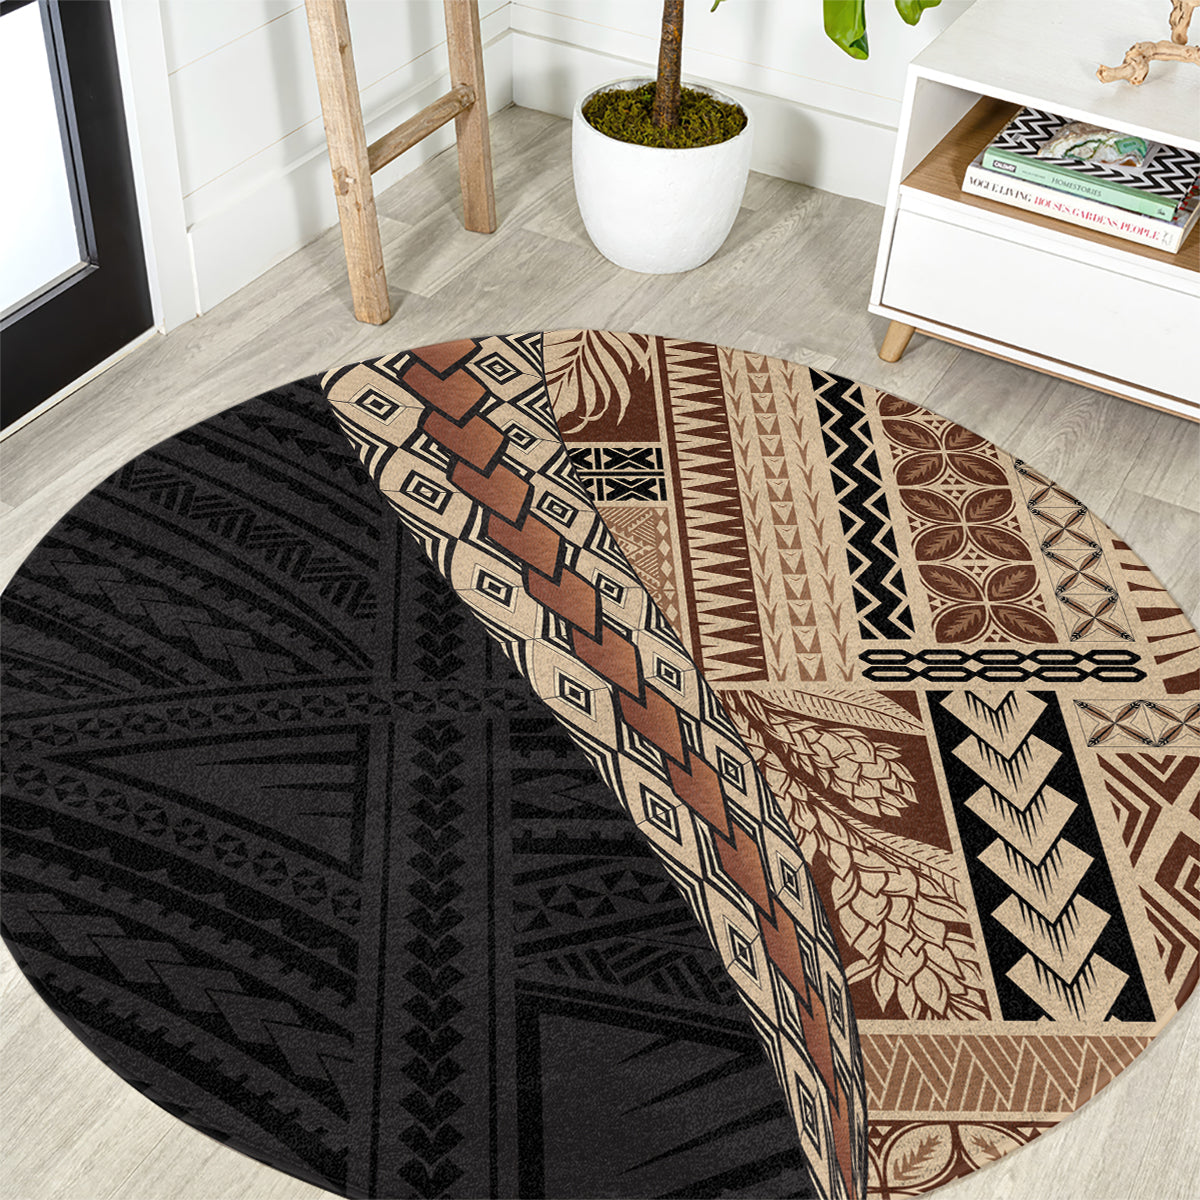 Samoa Siapo Motif Half Style Round Carpet Brown Version